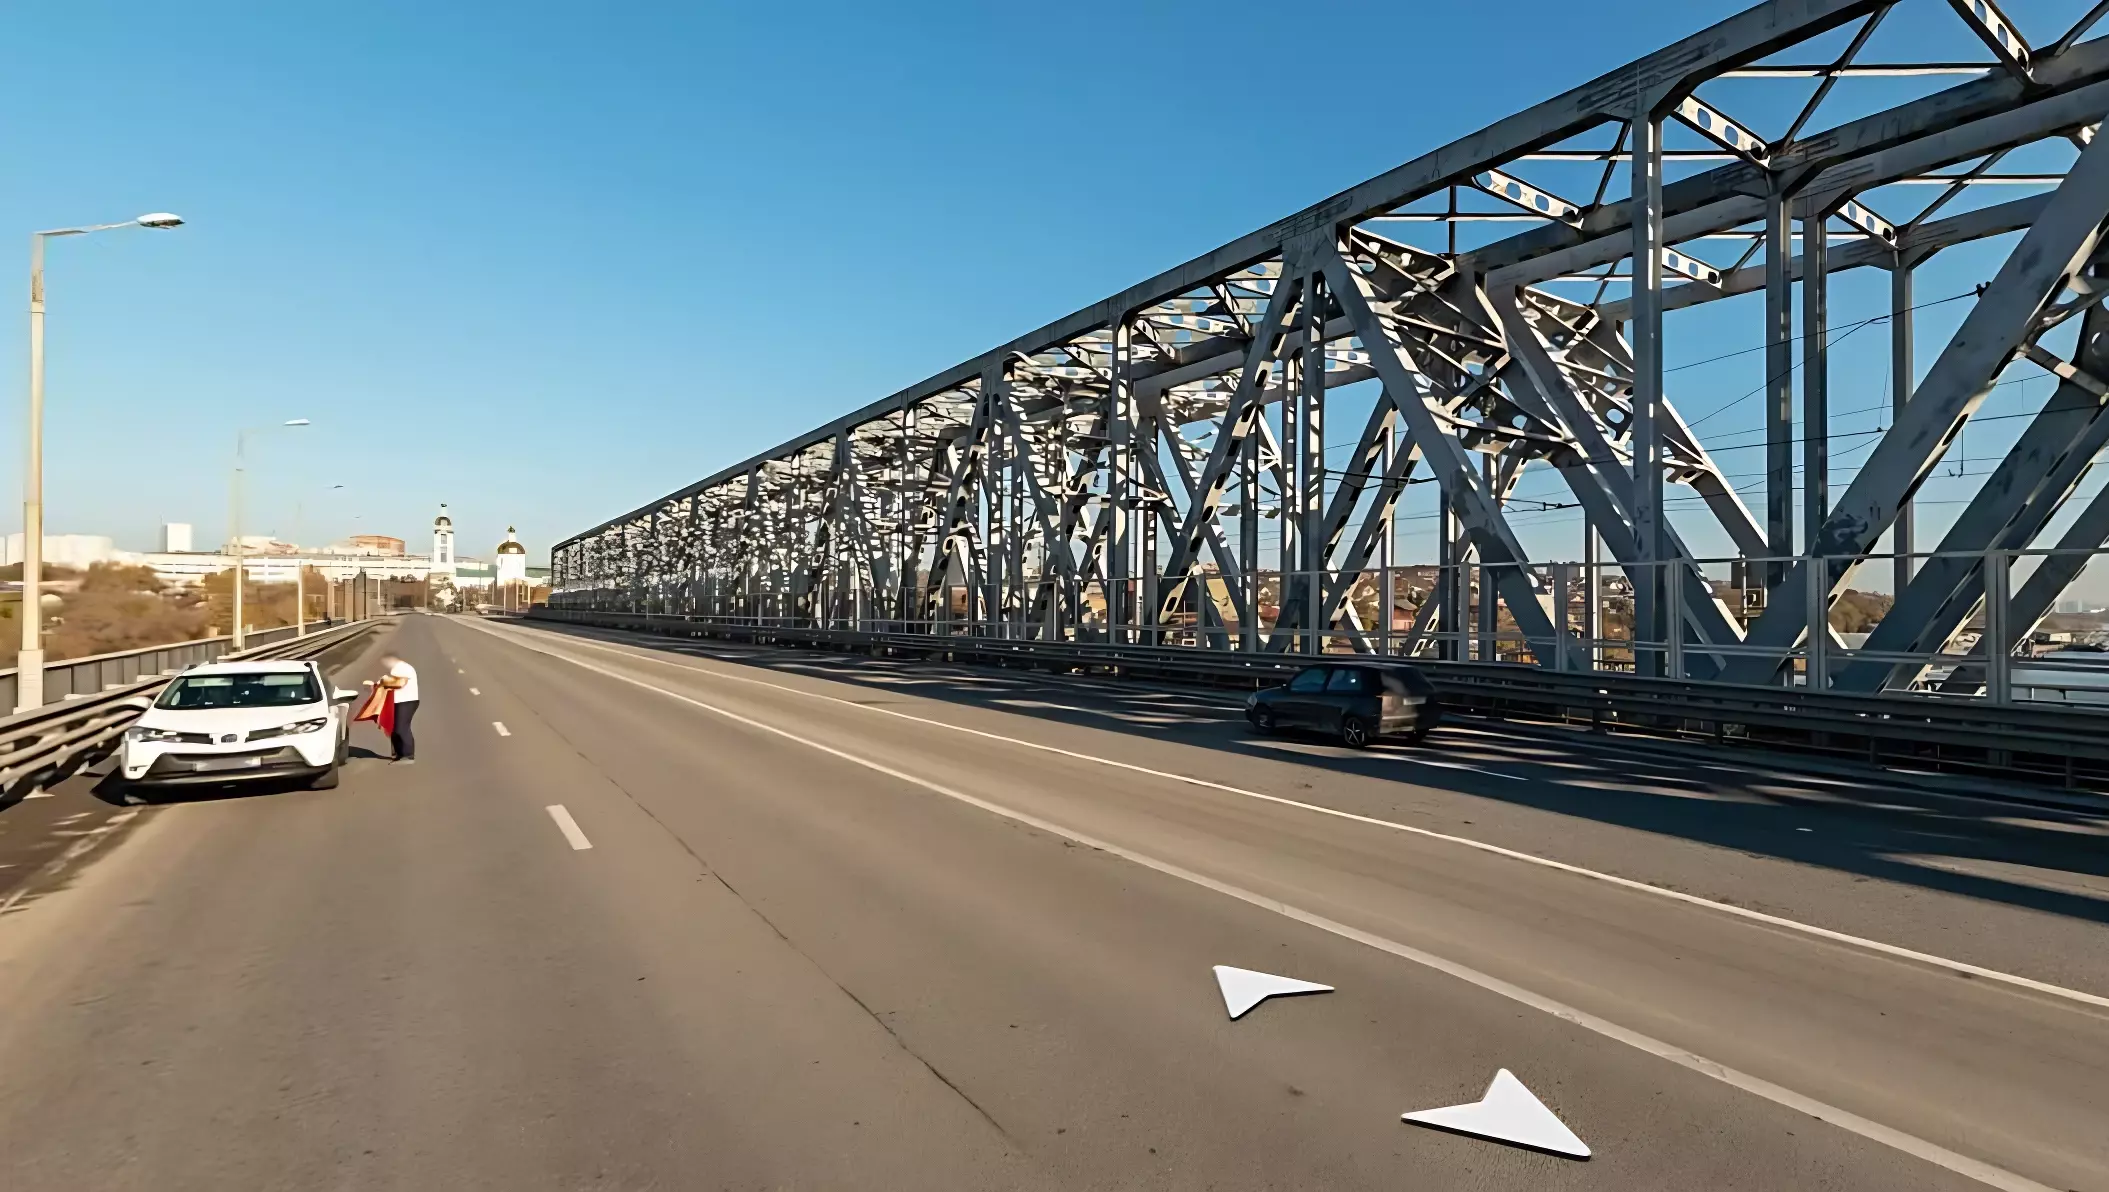 Продлили ограничение на въезд в Ростов-на-Дону через Западный мост